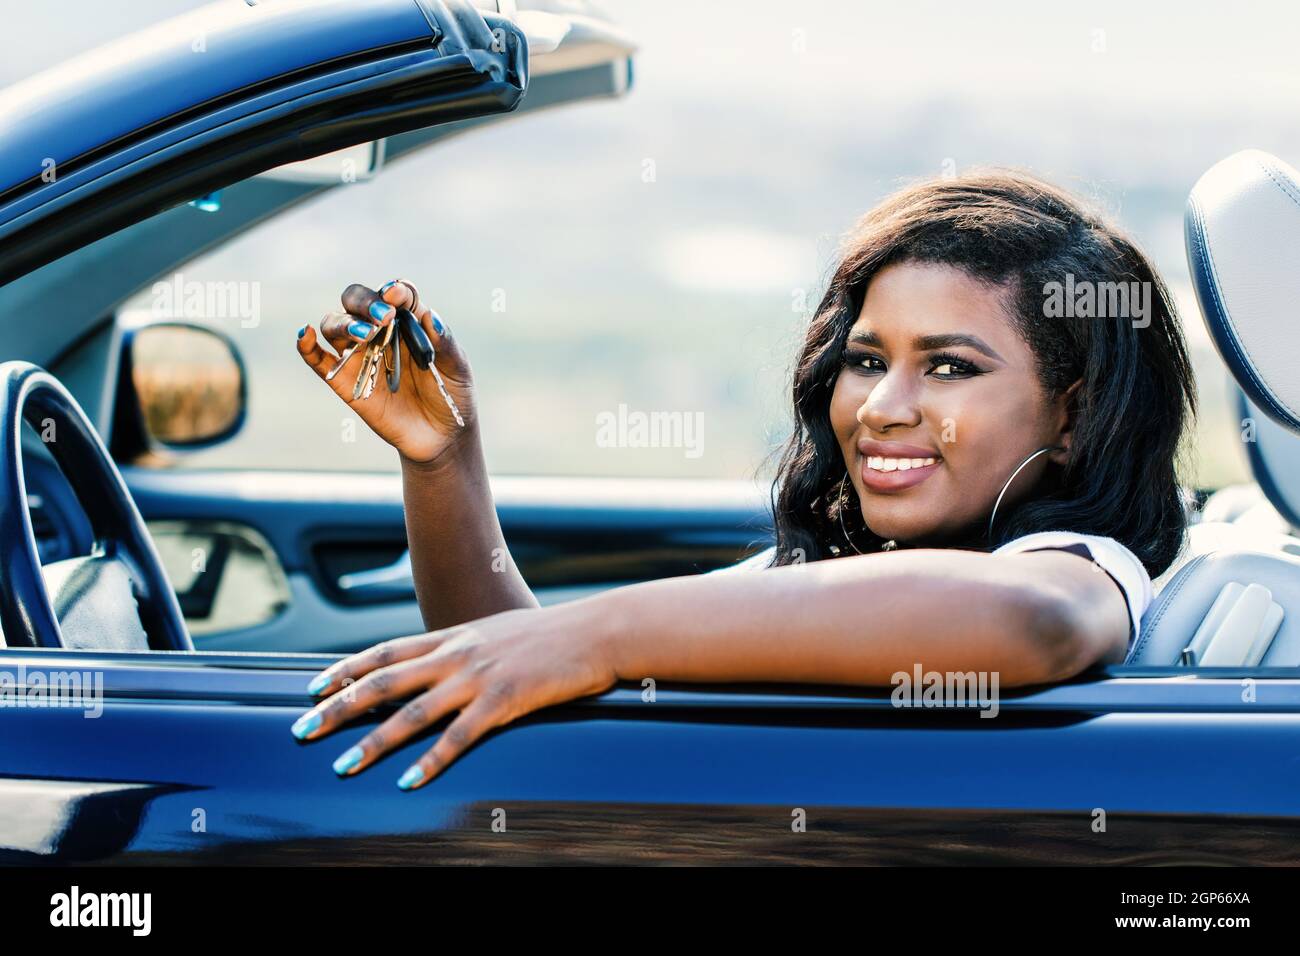 Gros plan d'une jeune femme africaine assise dans un cabriolet montrant les clés de la voiture. Banque D'Images